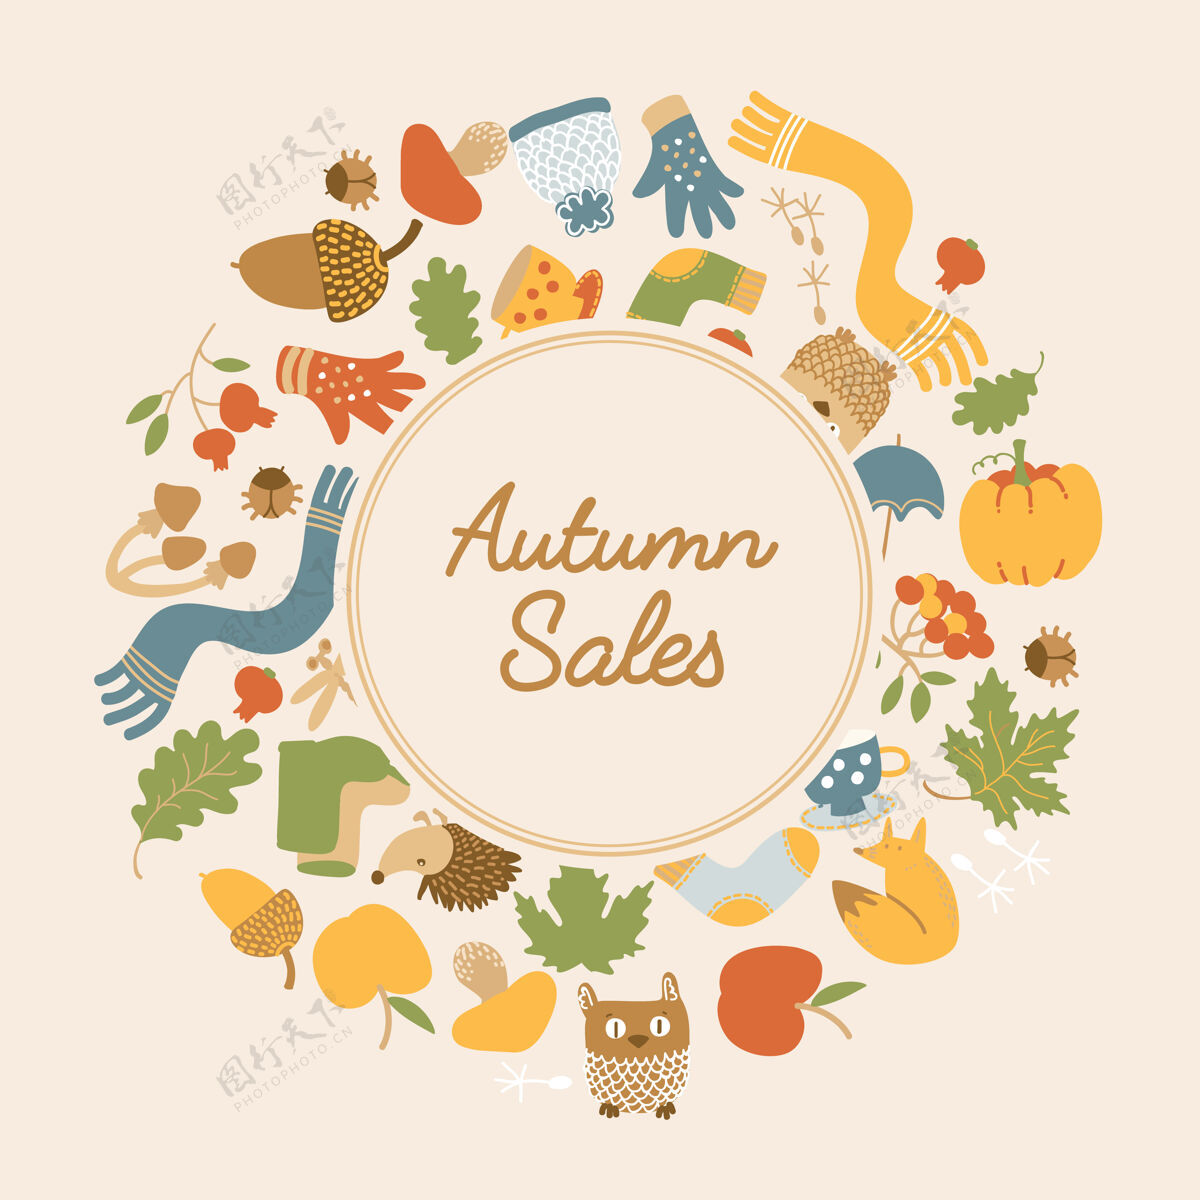 围巾抽象秋季销售模板与文本在圆形框架和丰富多彩的季节性元素布局圆圈南瓜